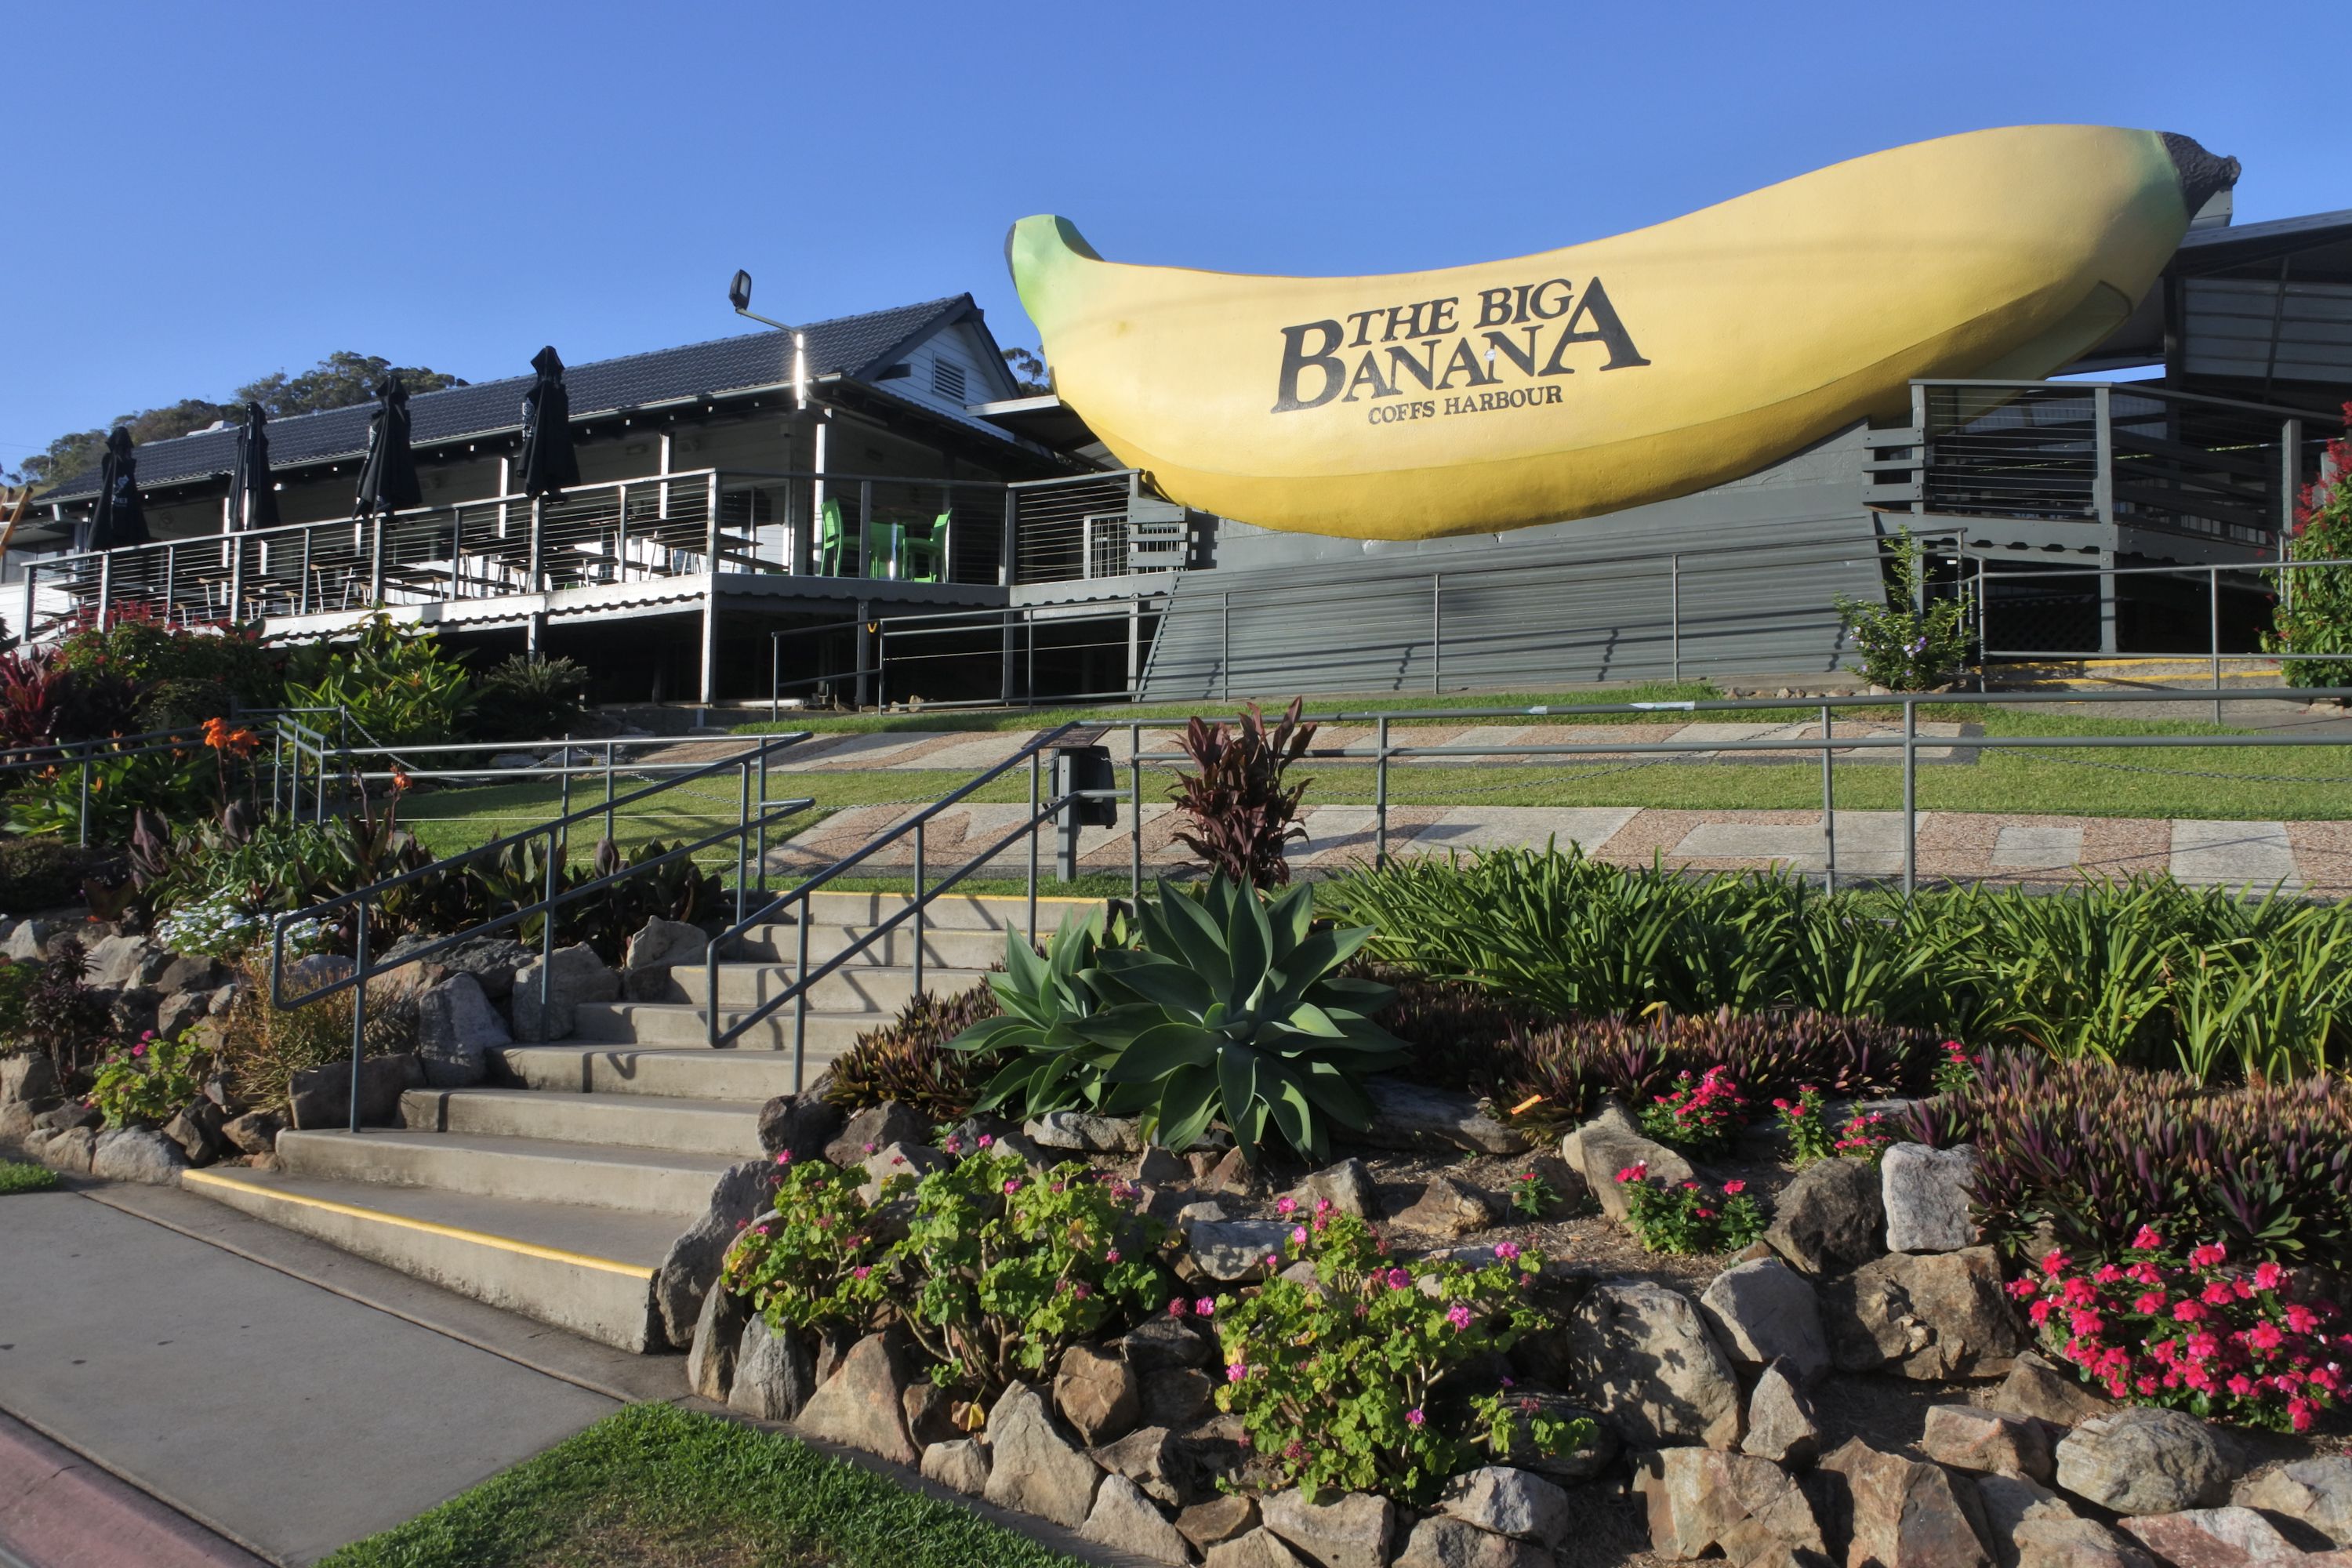 Banana walk-through at Big Banana Fun Park